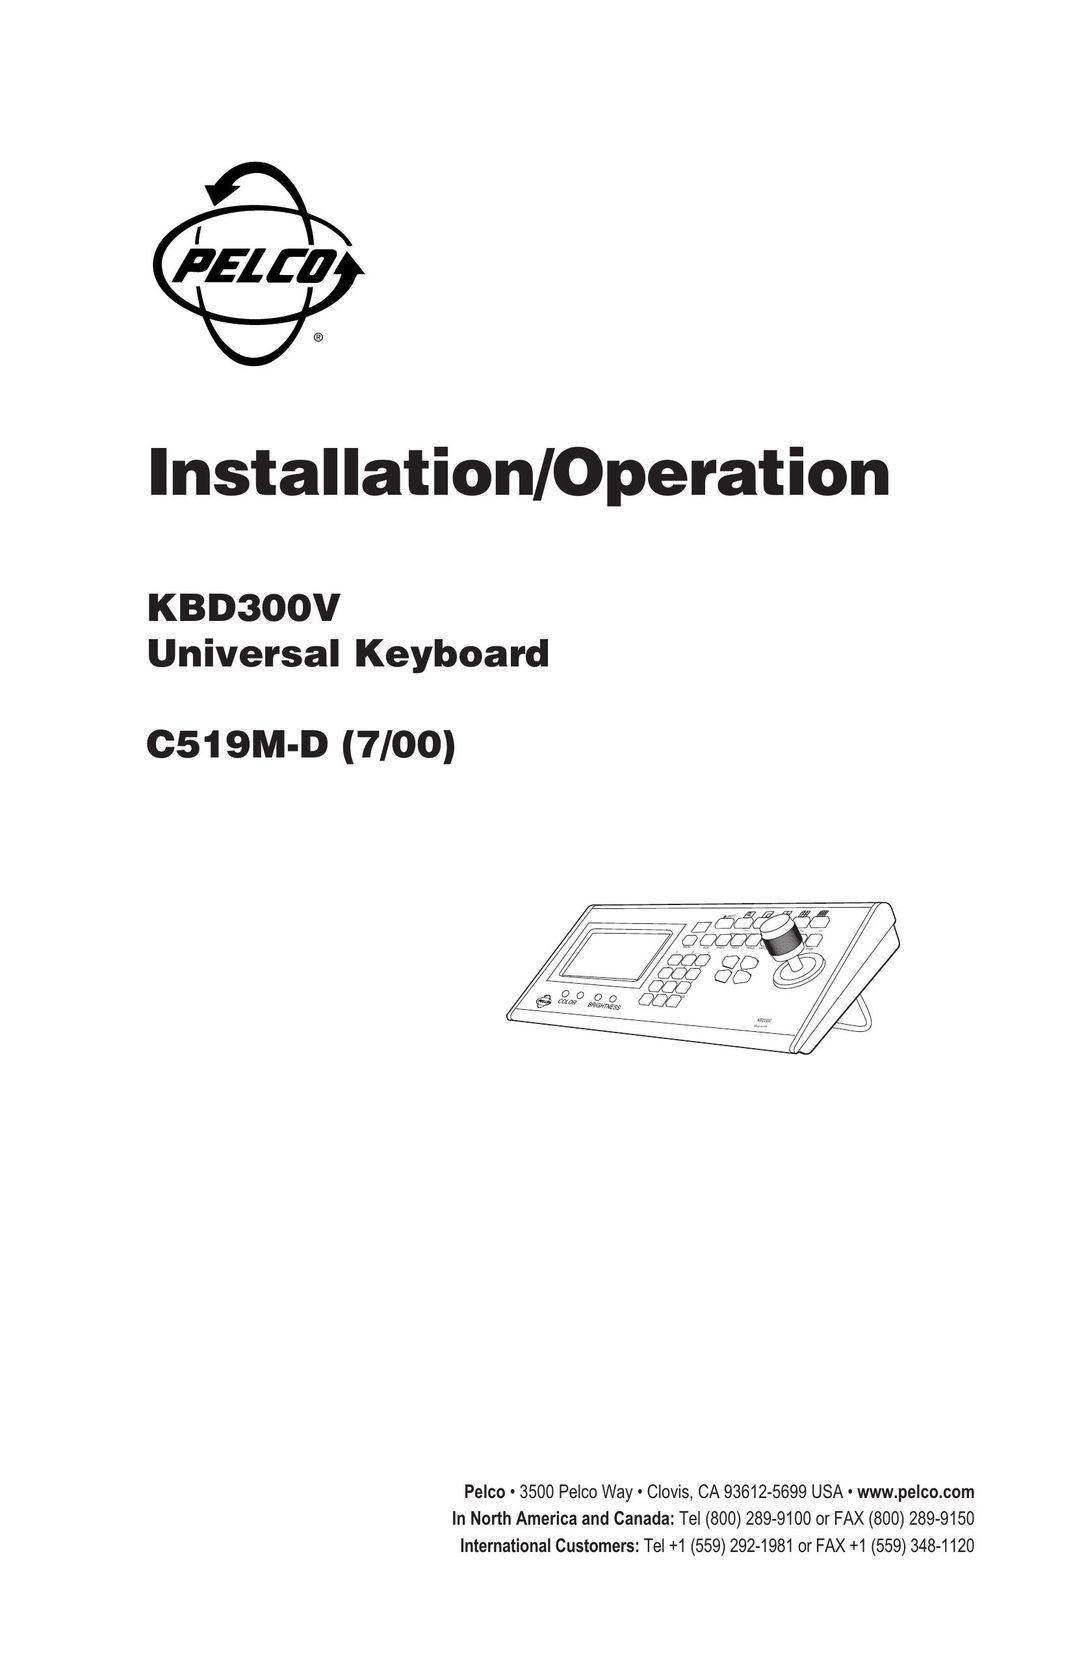 Pelco c519m-d Video Game Keyboard User Manual